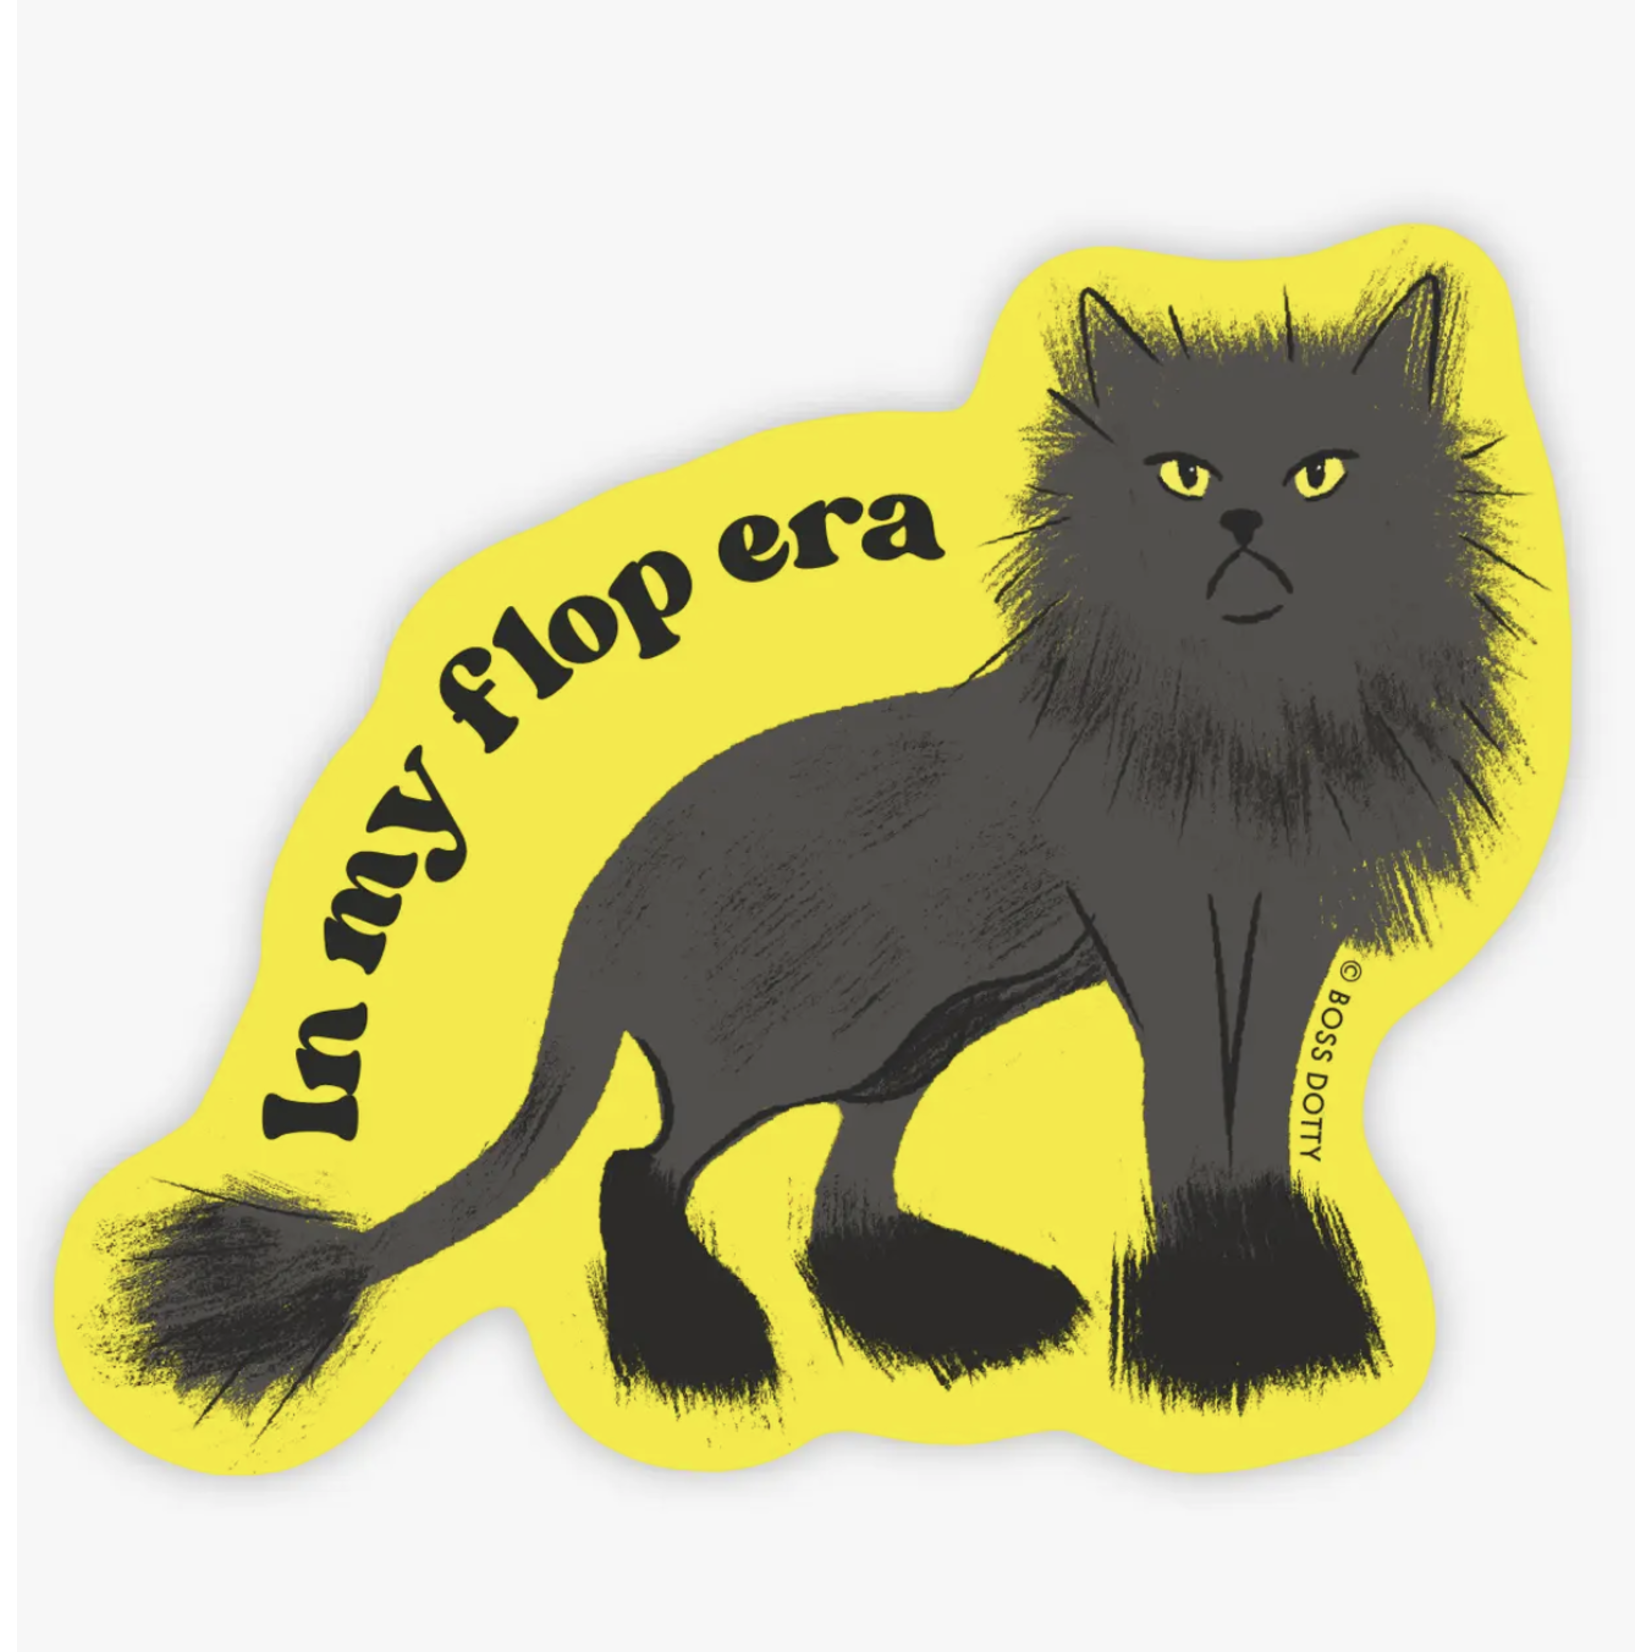 Boss Dotty Flop Era Cat Sticker